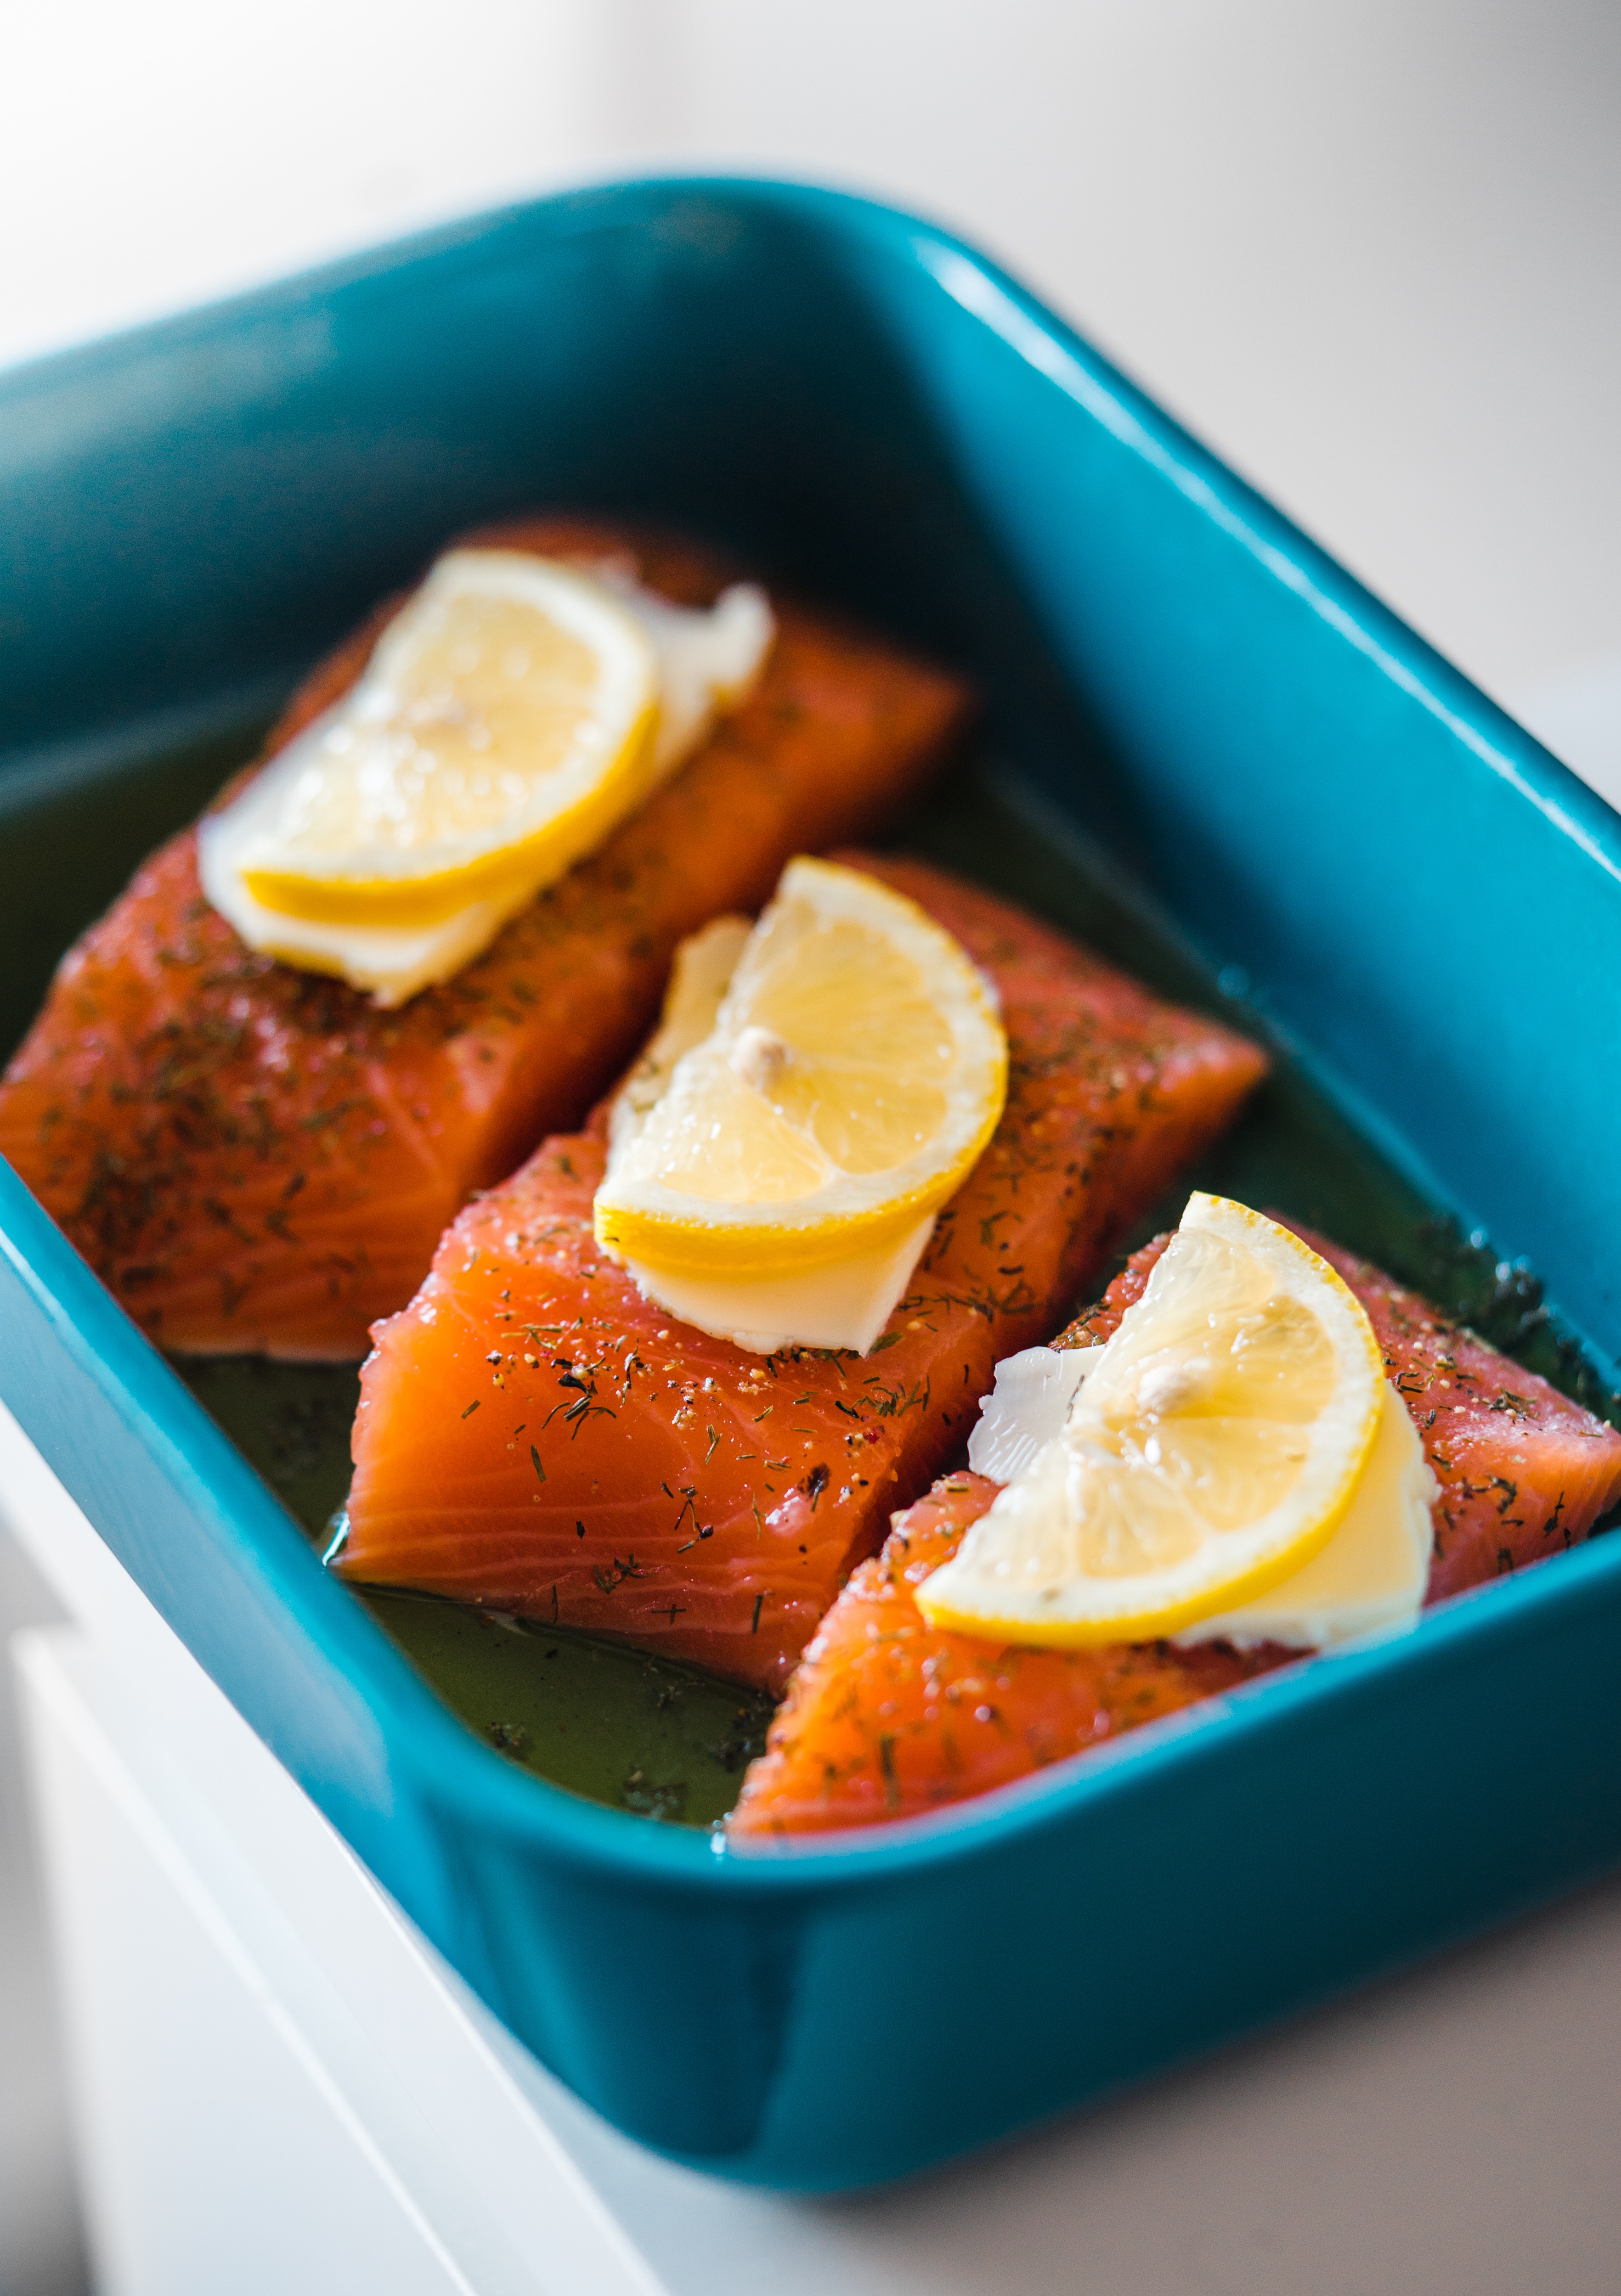 Salmon baking in a blue dish with lemon garnish